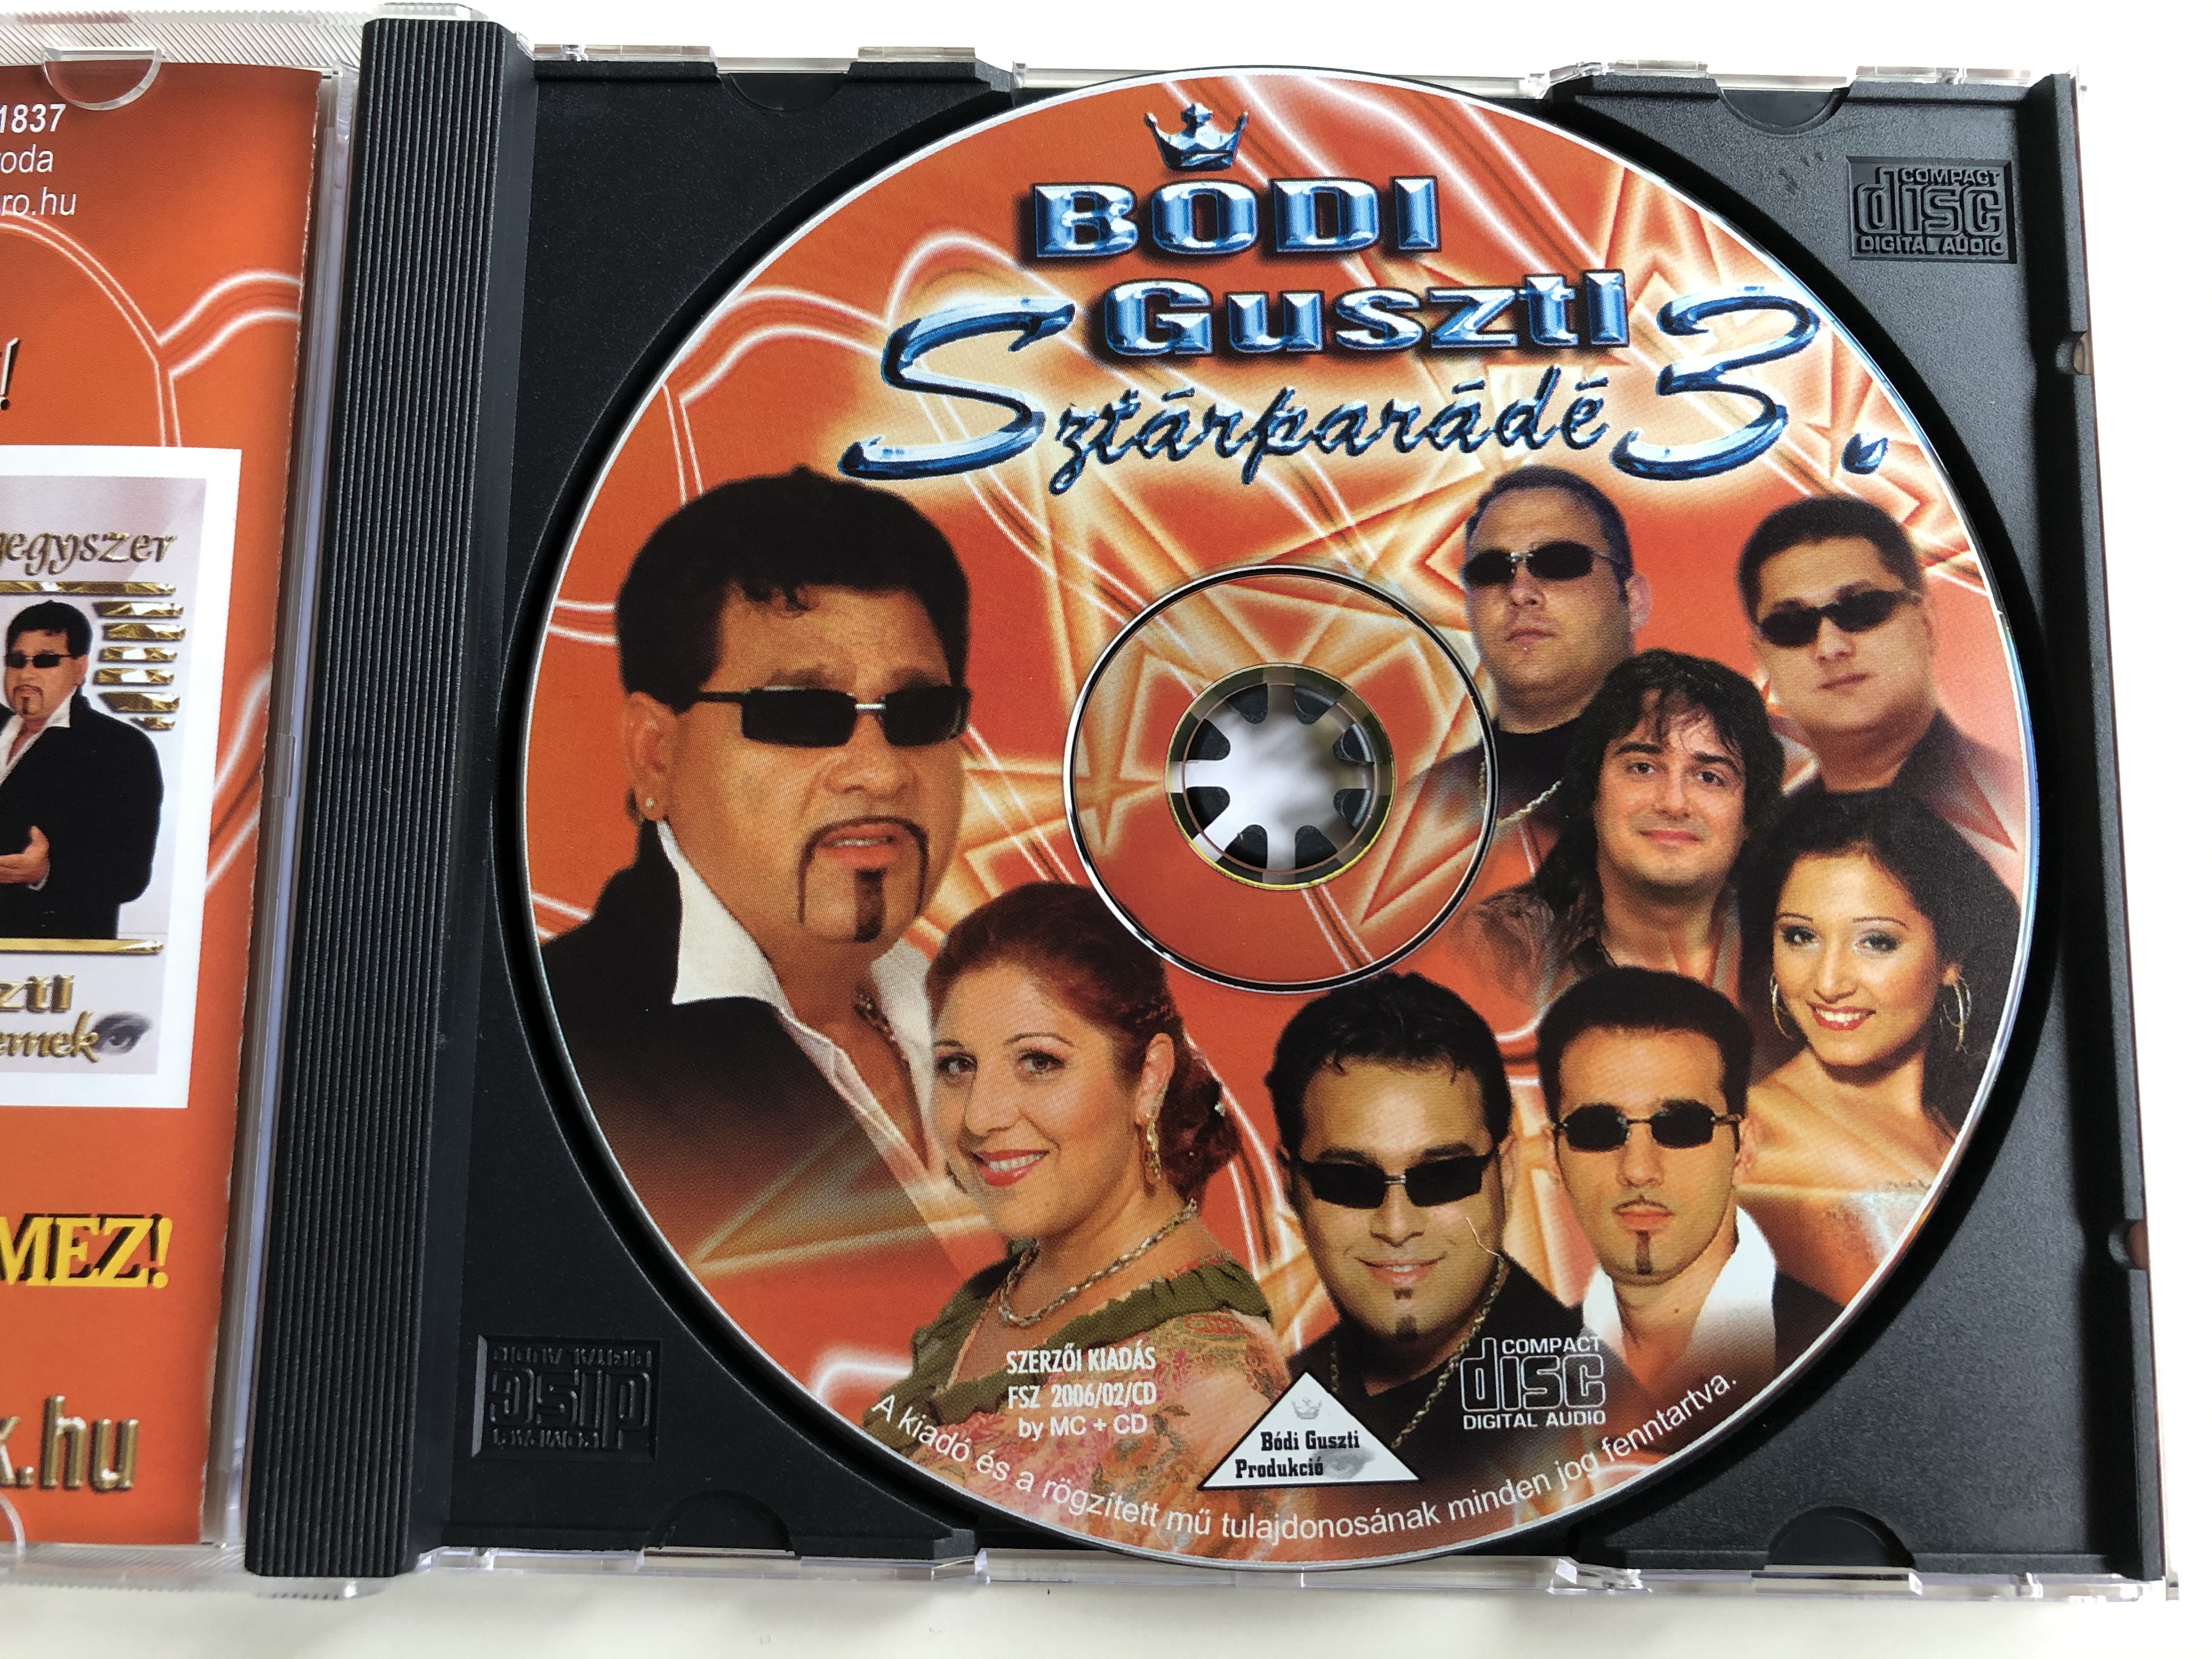 b-di-guszti-szt-rpar-d-3-bodi-guszti-produkcio-audio-cd-2006-fsz-200602cd-3-.jpg